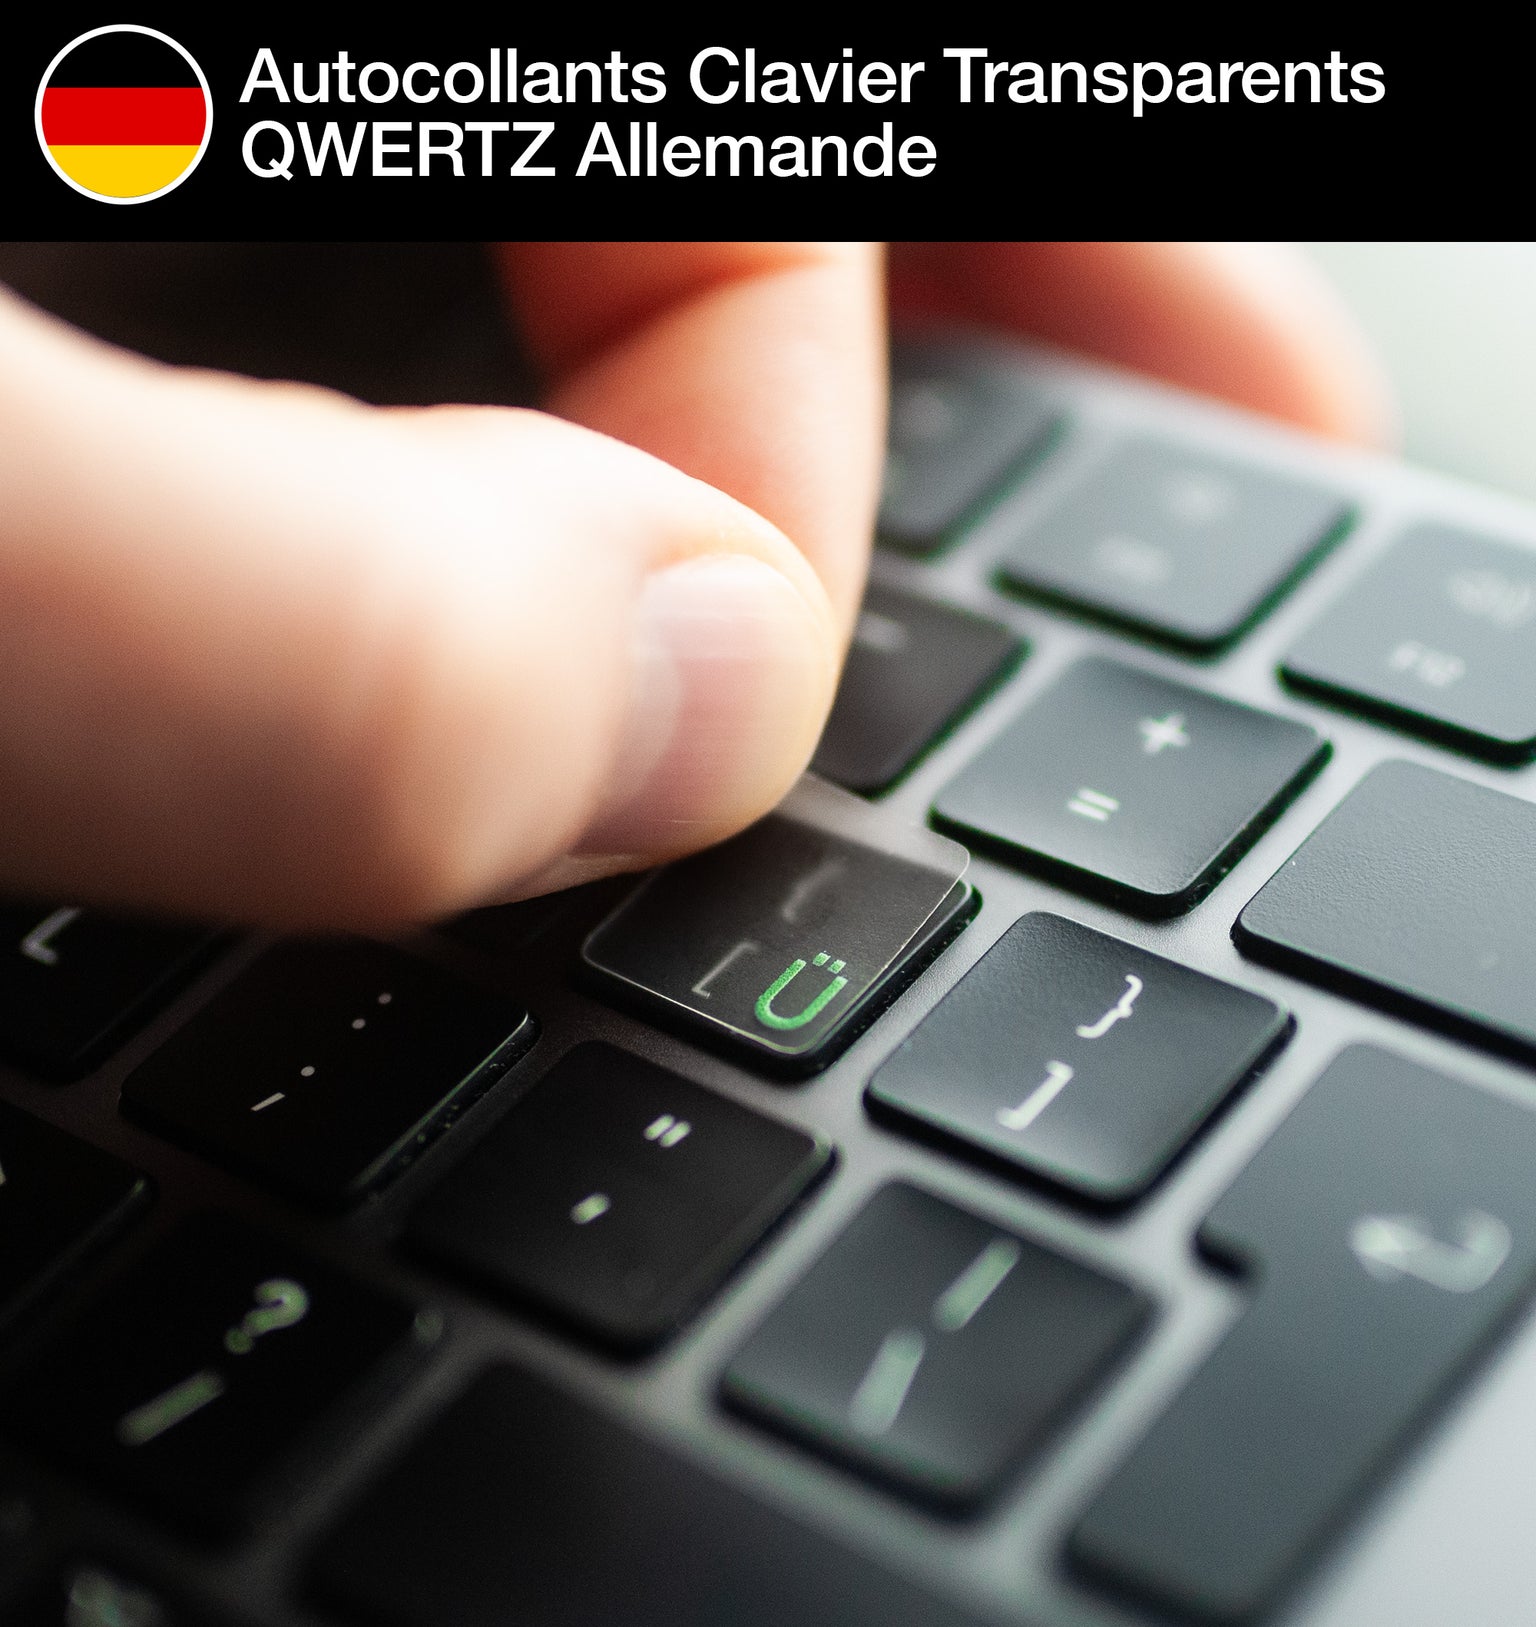 Stickers Autocollants Clavier Transparents QWERTZ Allemande